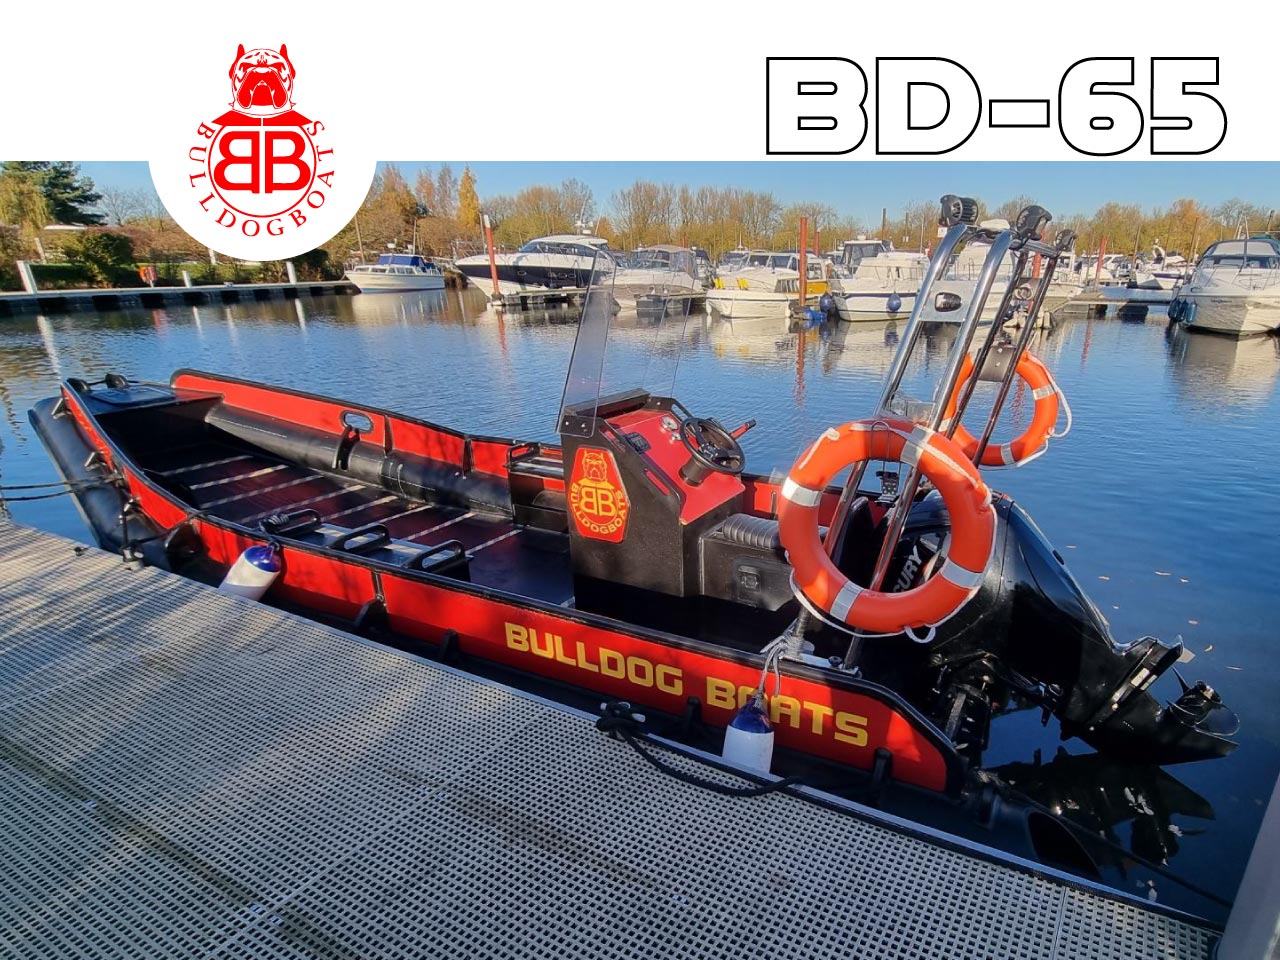 Bulldog Boats BD-65 RCB350 Available From Farndon Marina